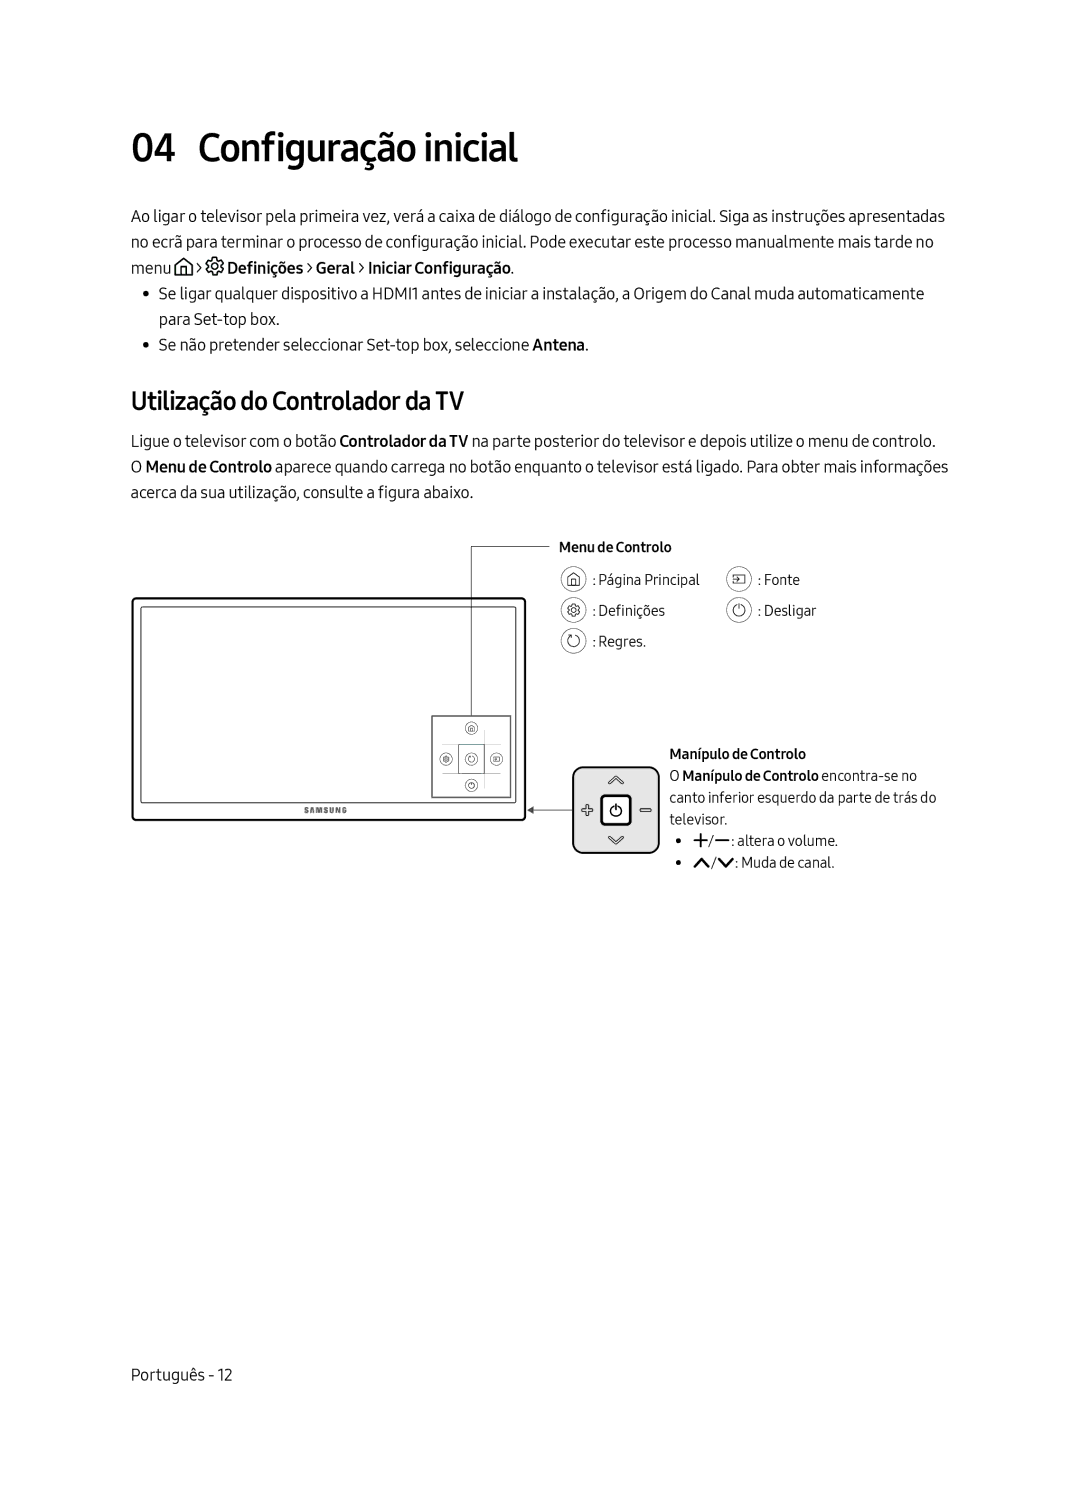 Samsung UE65MU6225KXXC, UE55MU6225KXXC, UE49MU6225KXXC manual Configuração inicial, Utilização do Controlador da TV 